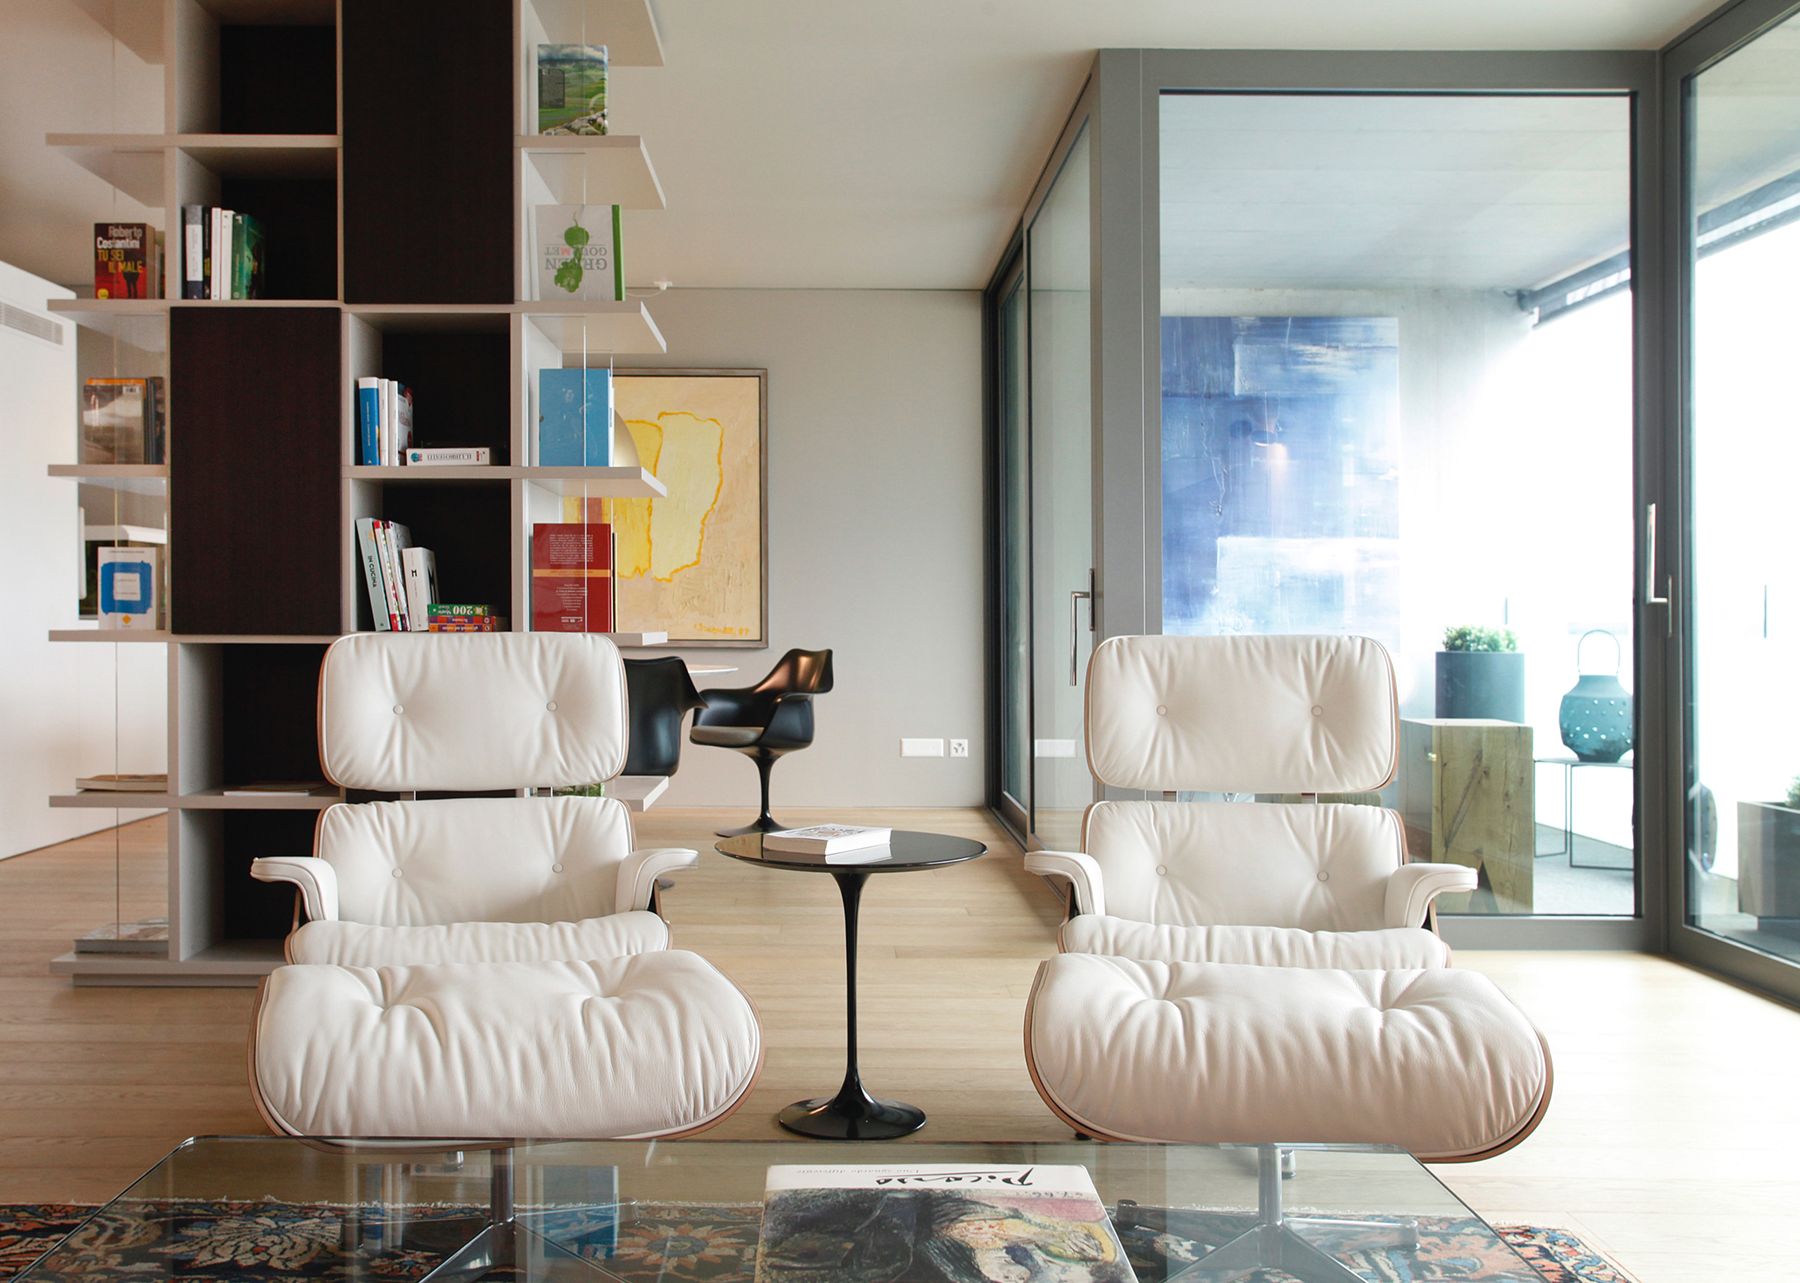 Appartamento a Lugano, Progetto di interni, 220mq

Cliente privato, 2019-2020